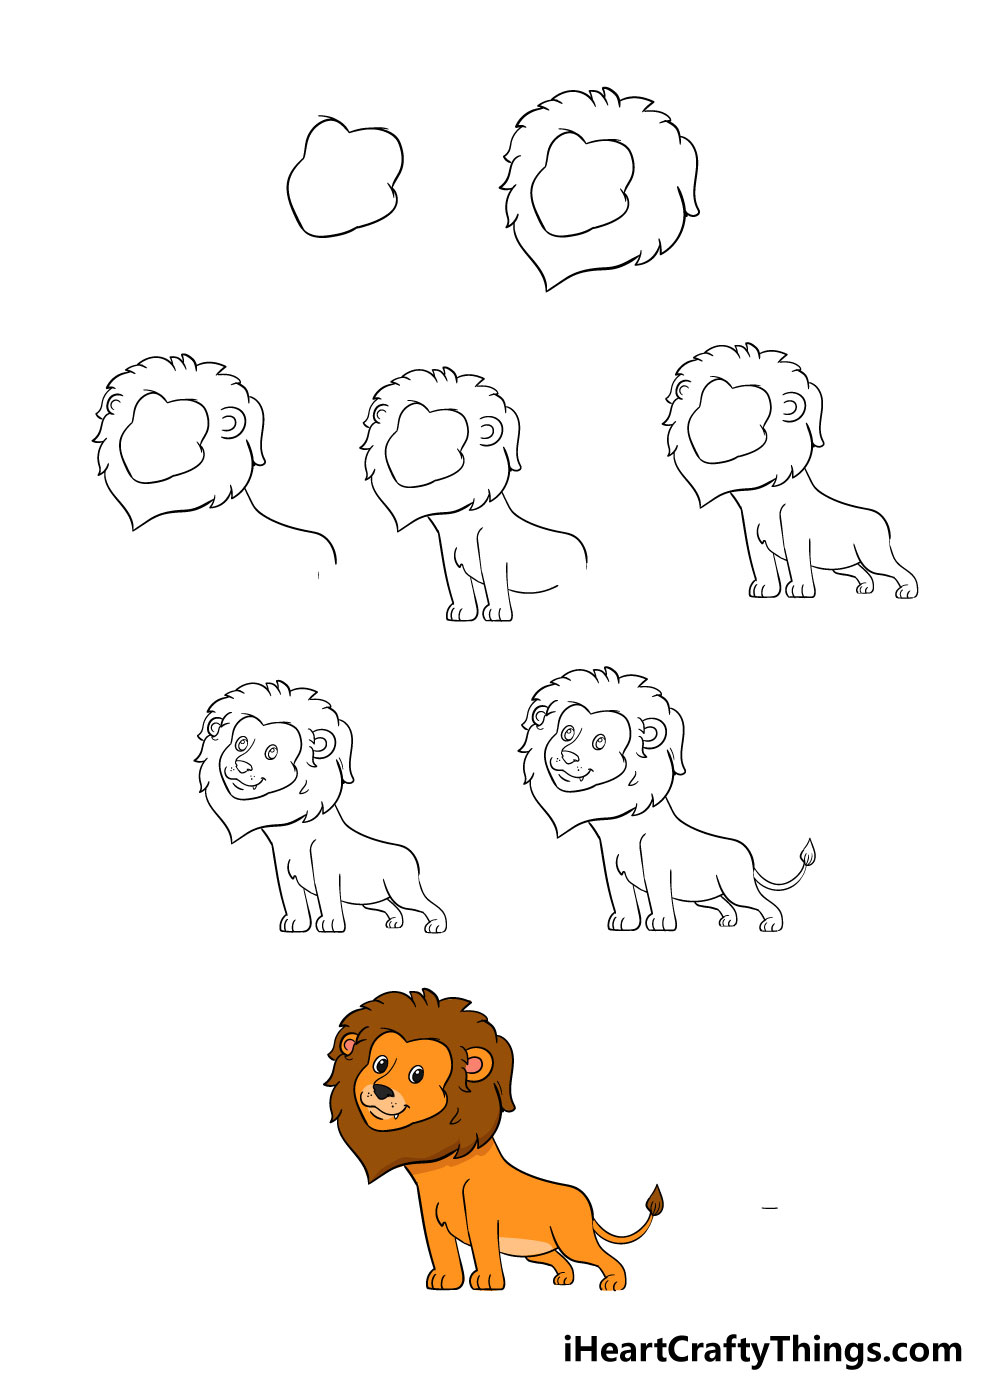 How to draw a lion in 8 easy steps - Hướng dẫn cách vẽ con sư tử đơn giản với 8 bước cơ bản